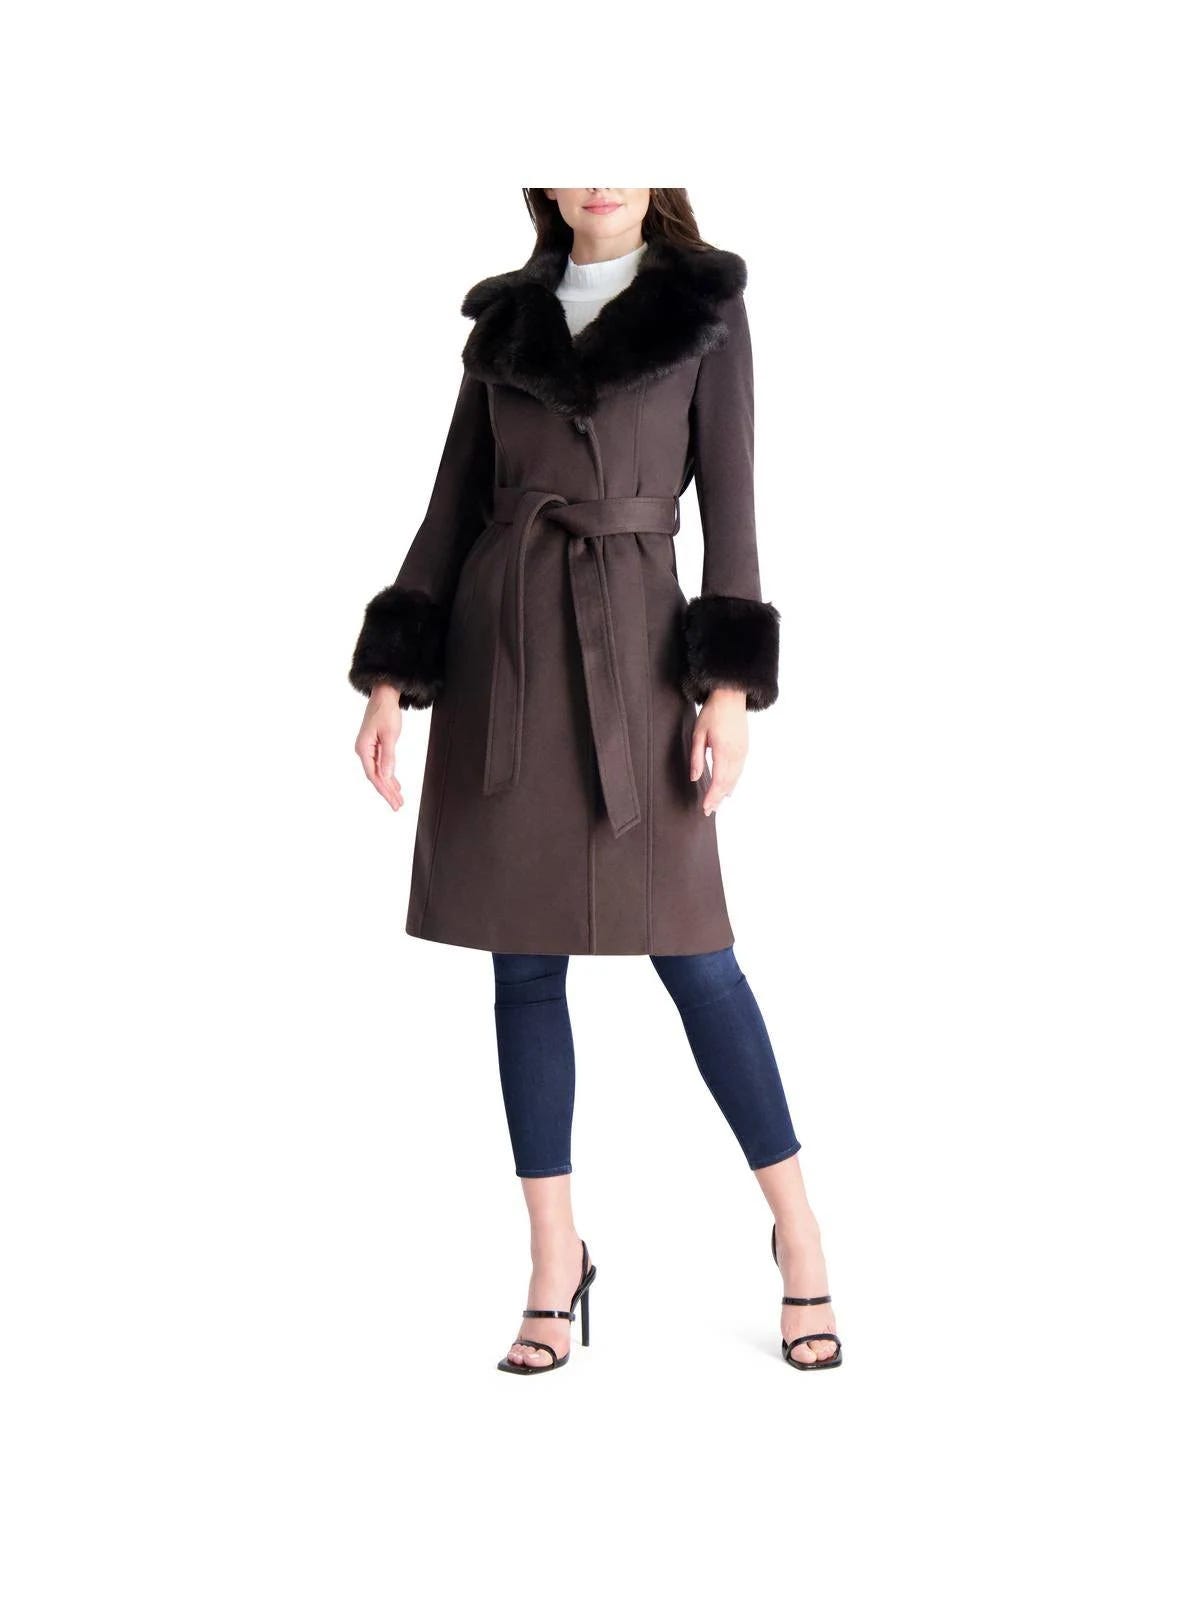 Via Spiga Wool Coat with Faux Fur Trim - Brown | Image